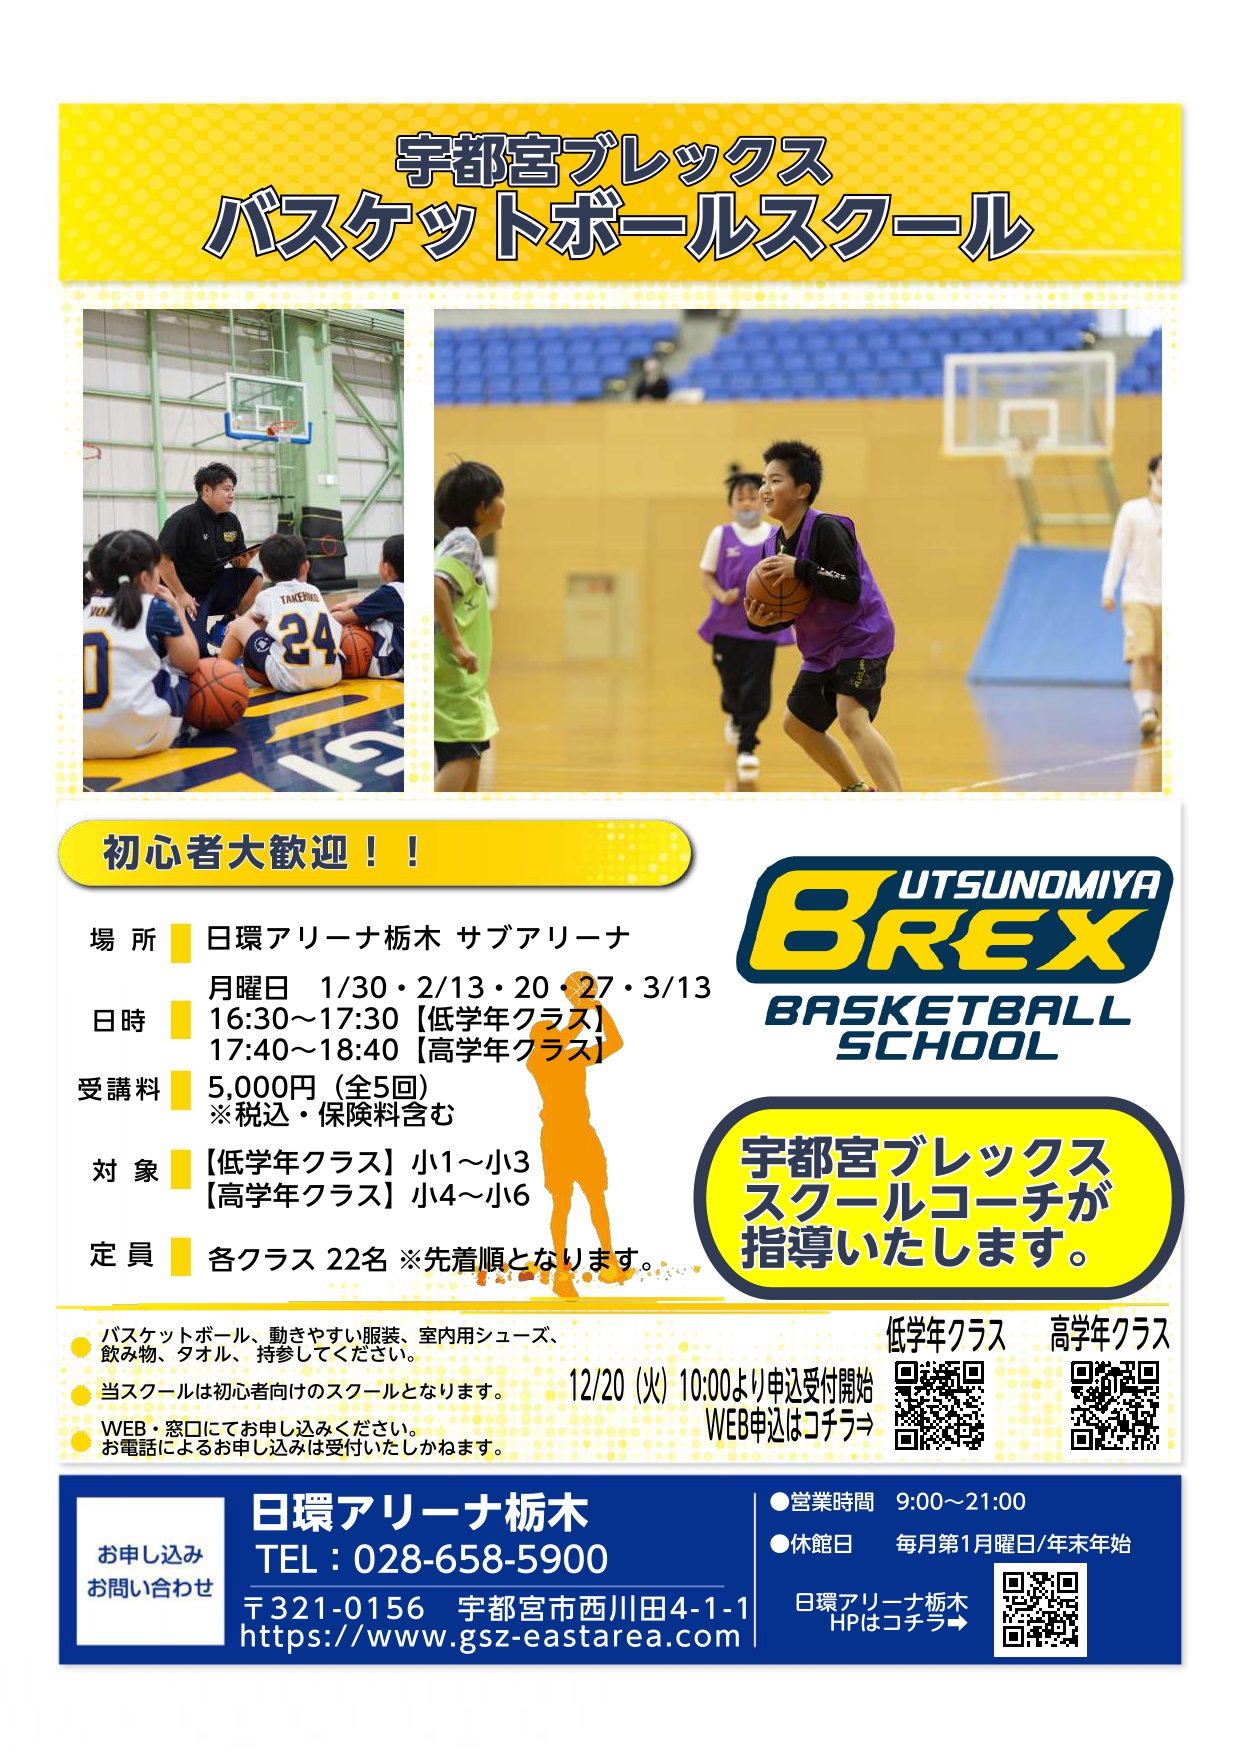 【小学生対象】宇都宮ブレックスバスケットボールスクール